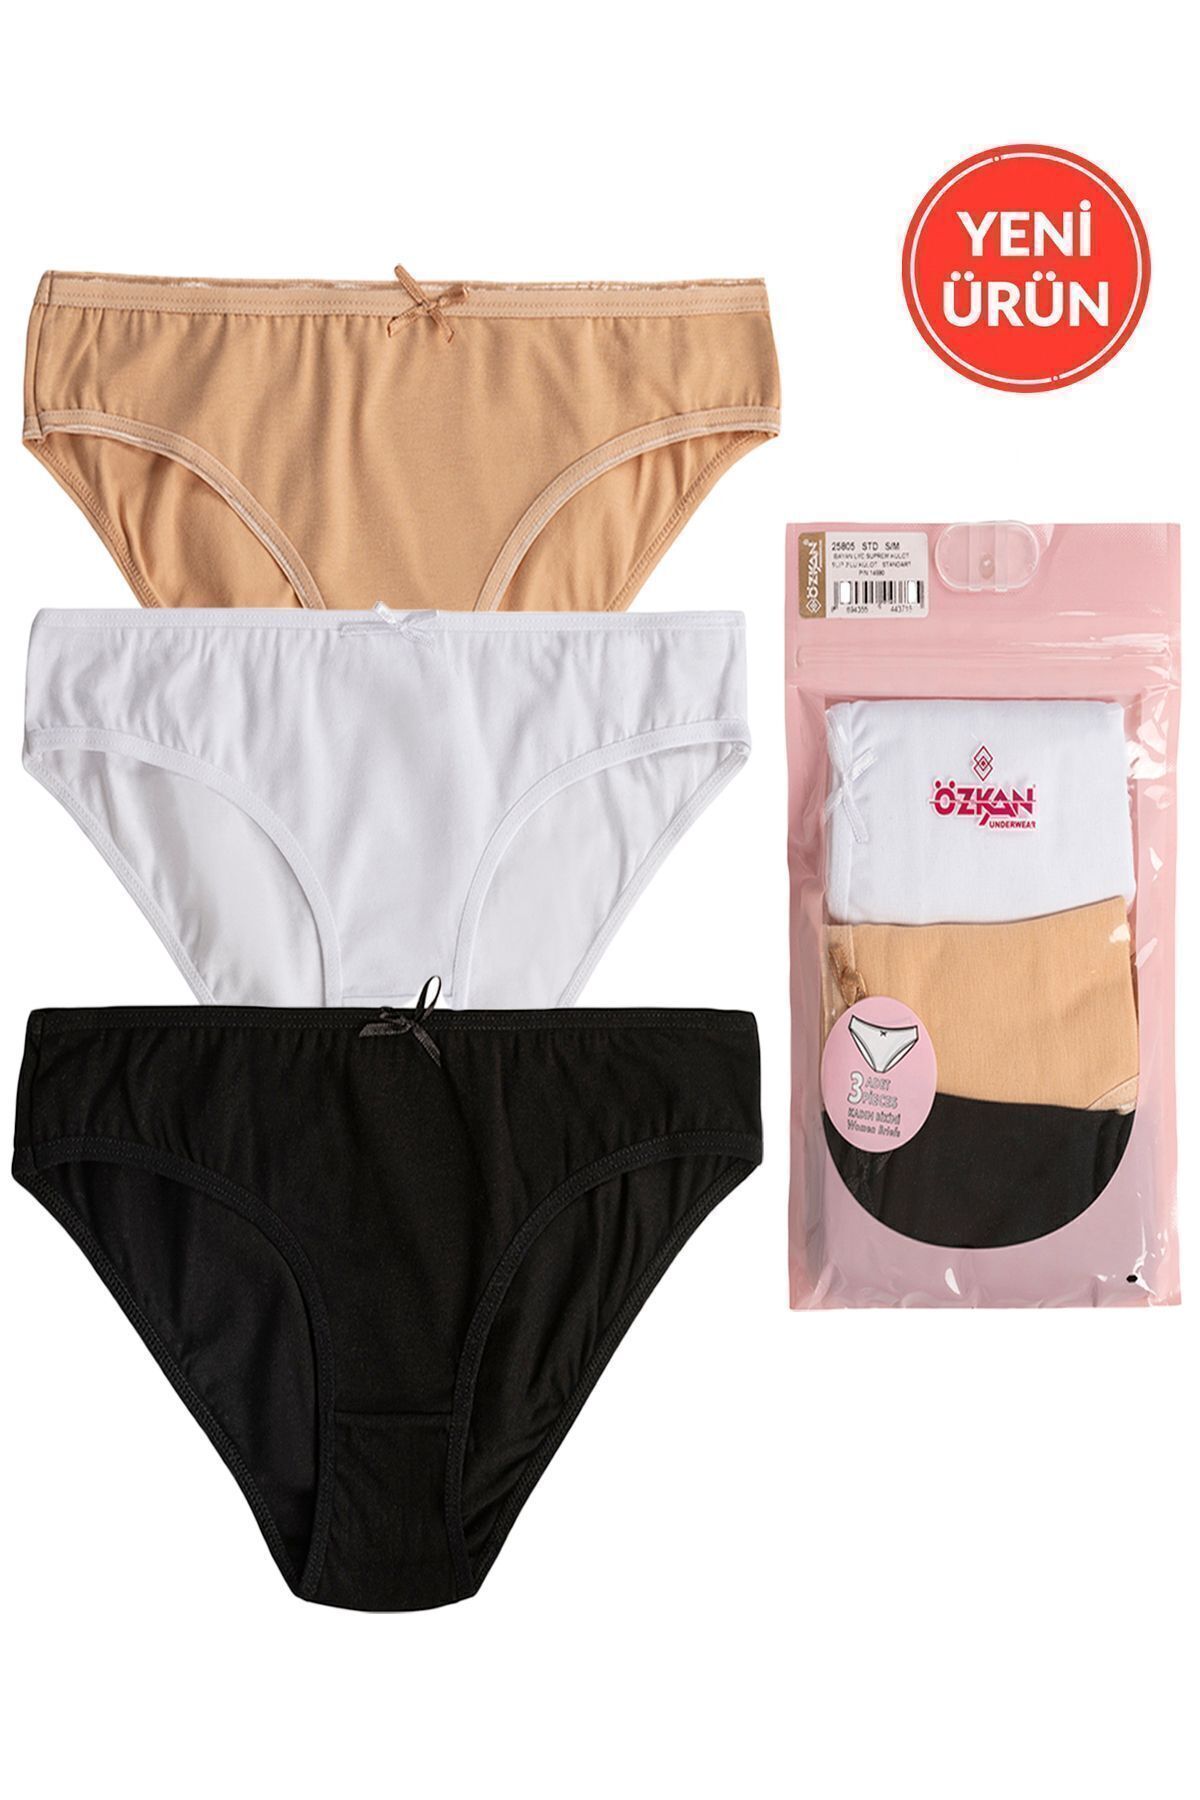 ÖZKAN underwear Özkan 25805 Kadın 3'lü Paket Pamuklu Esnek Rahat Slip Bikini Külot